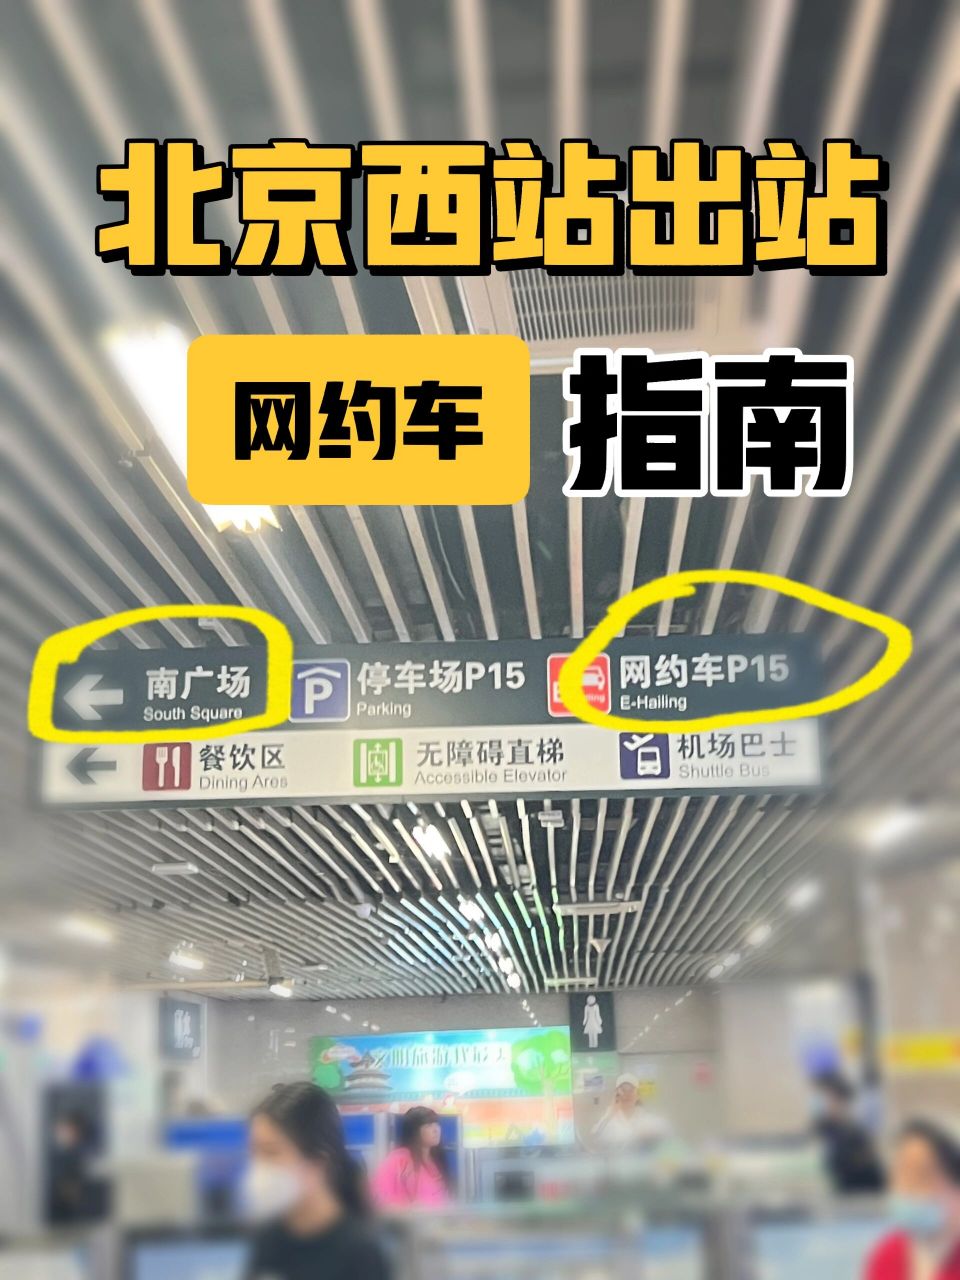 北京西站出站口示意图图片